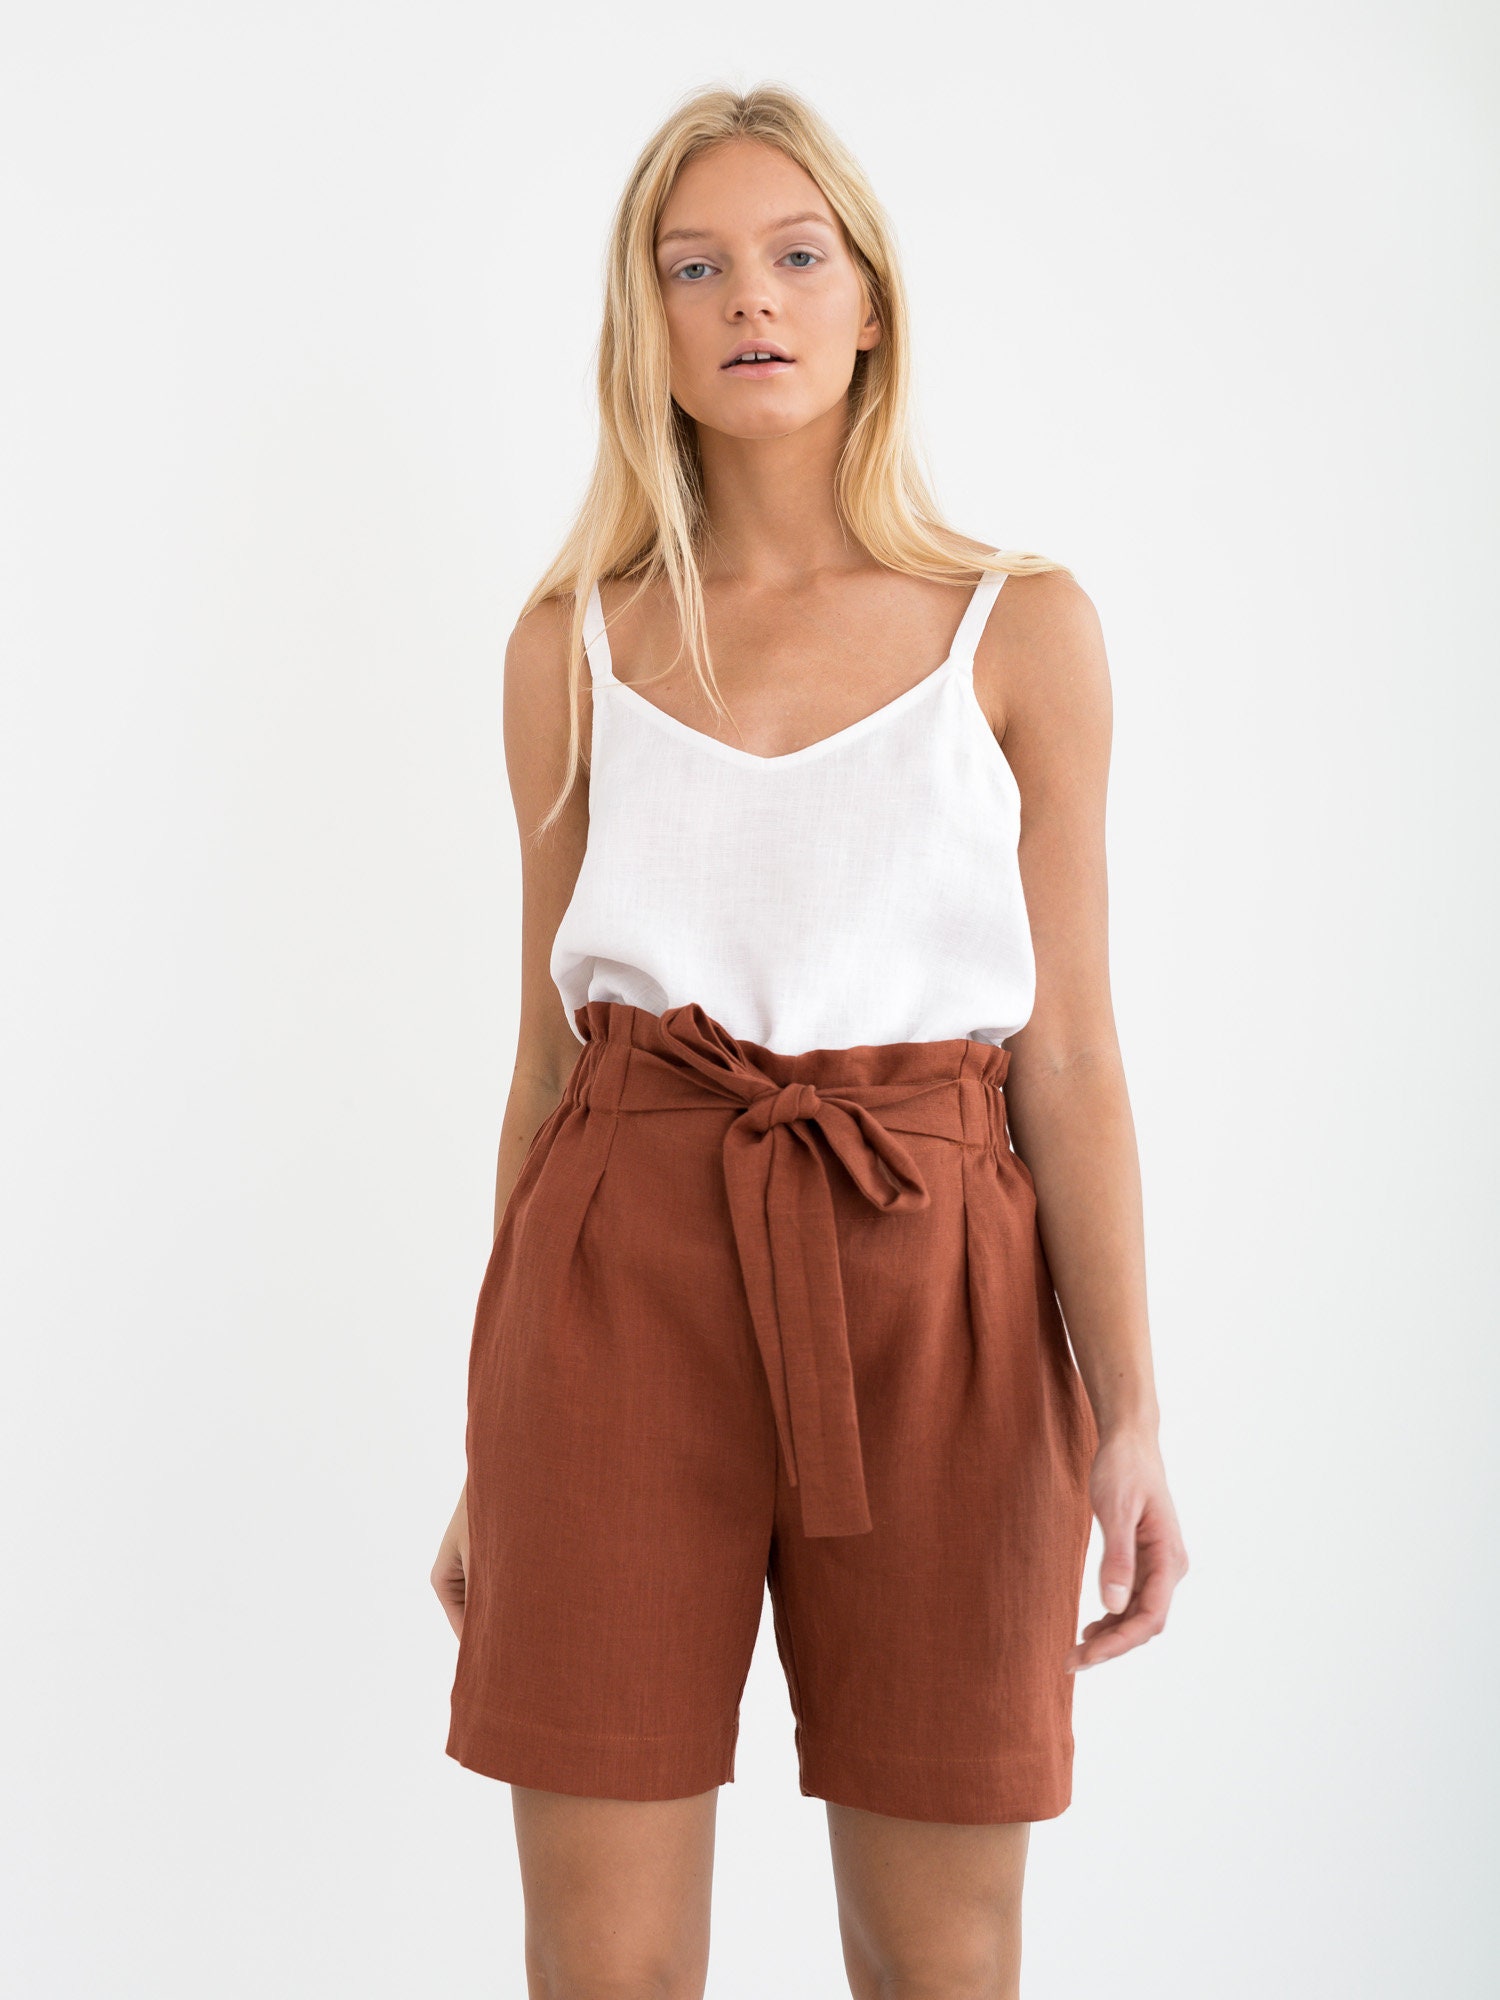 CORA Linen Shorts / High Waisted Linen Shorts / Paper Bag Beach